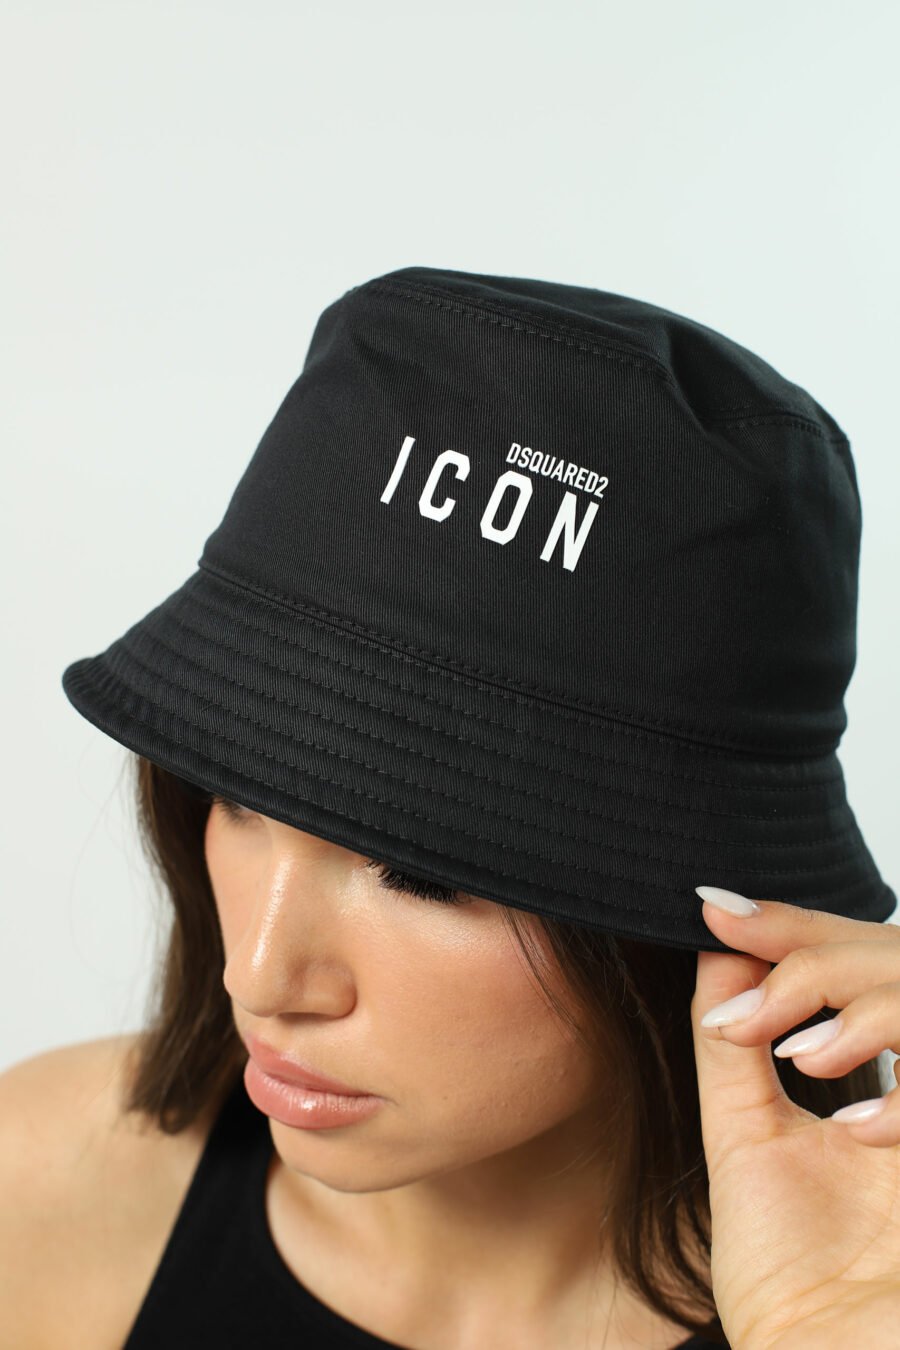 Chapeau de pêcheur noir avec logo "icon" - Photos 2533